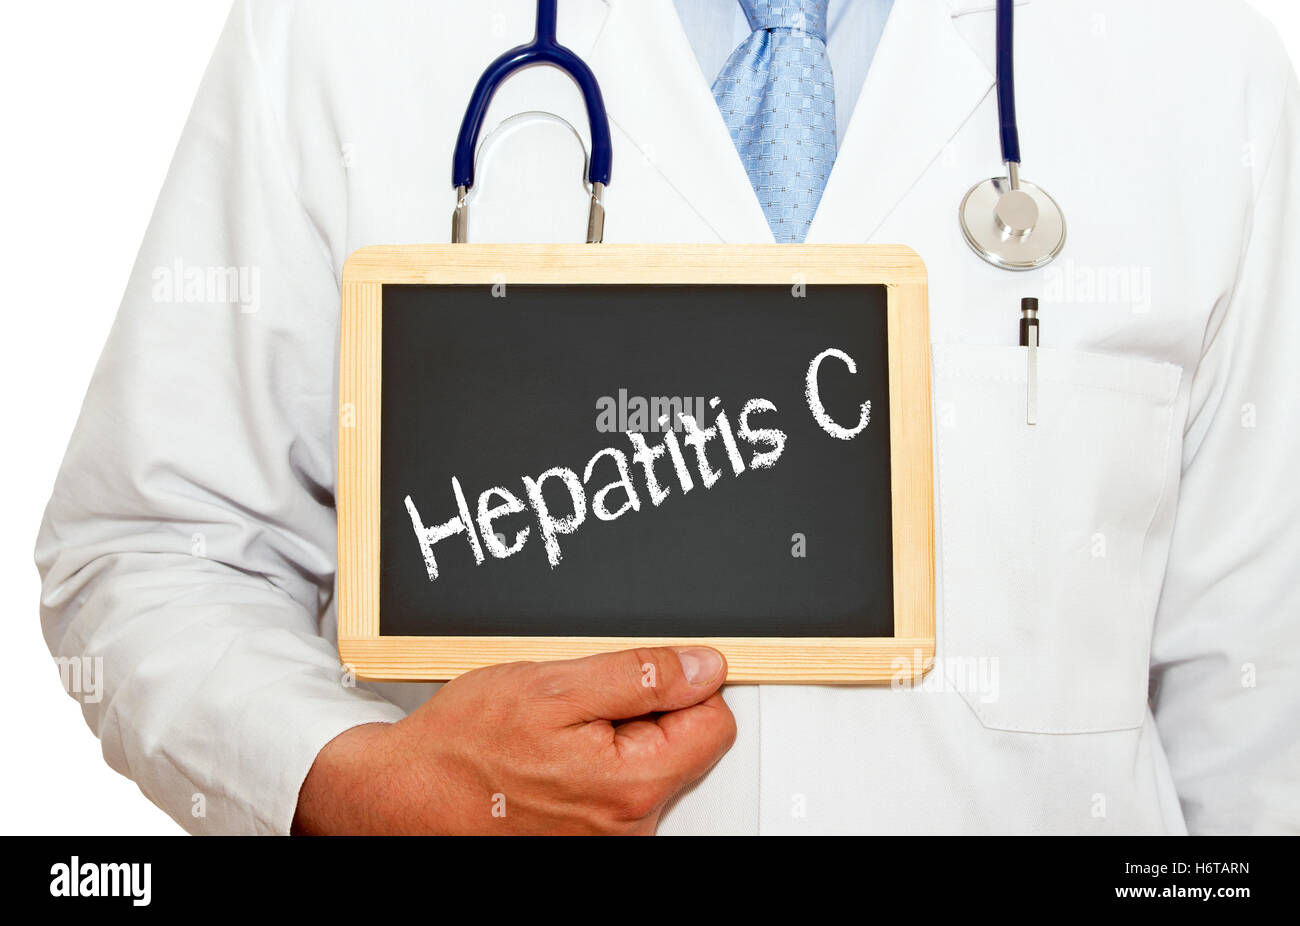 hepatitis c Stock Photo